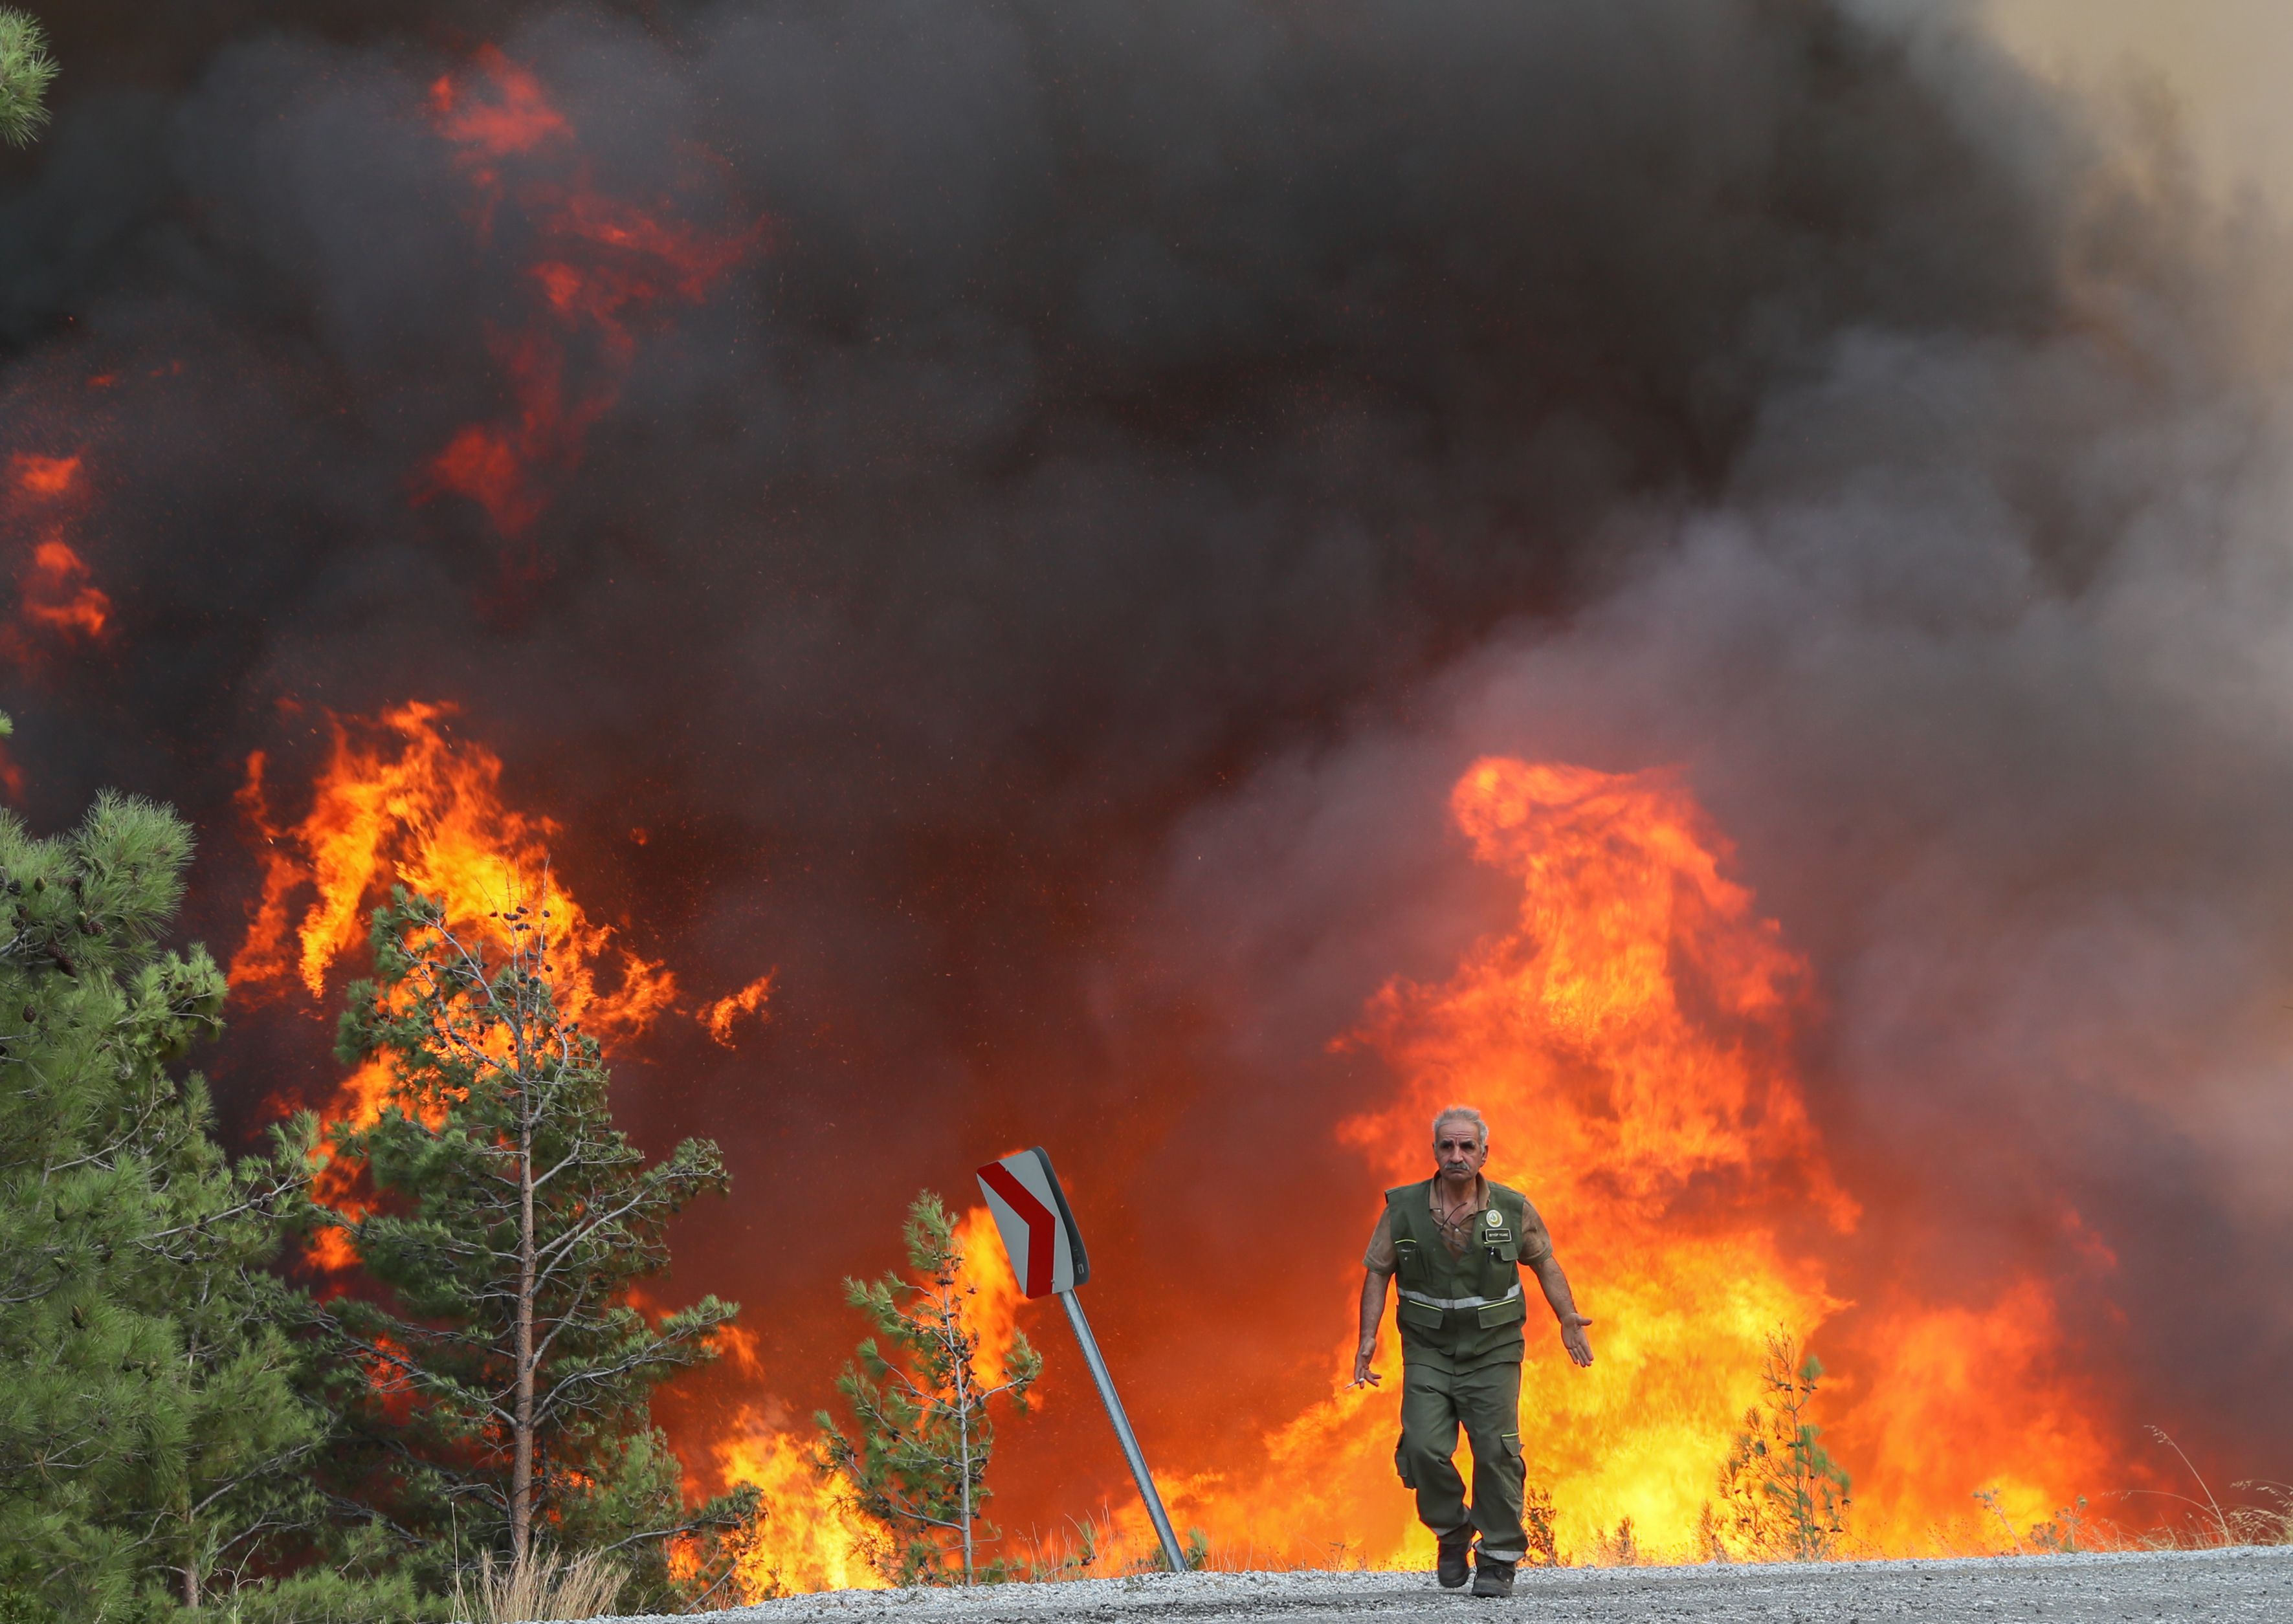 A man in uniform walks on a road in front of a billowing fire in Turkey